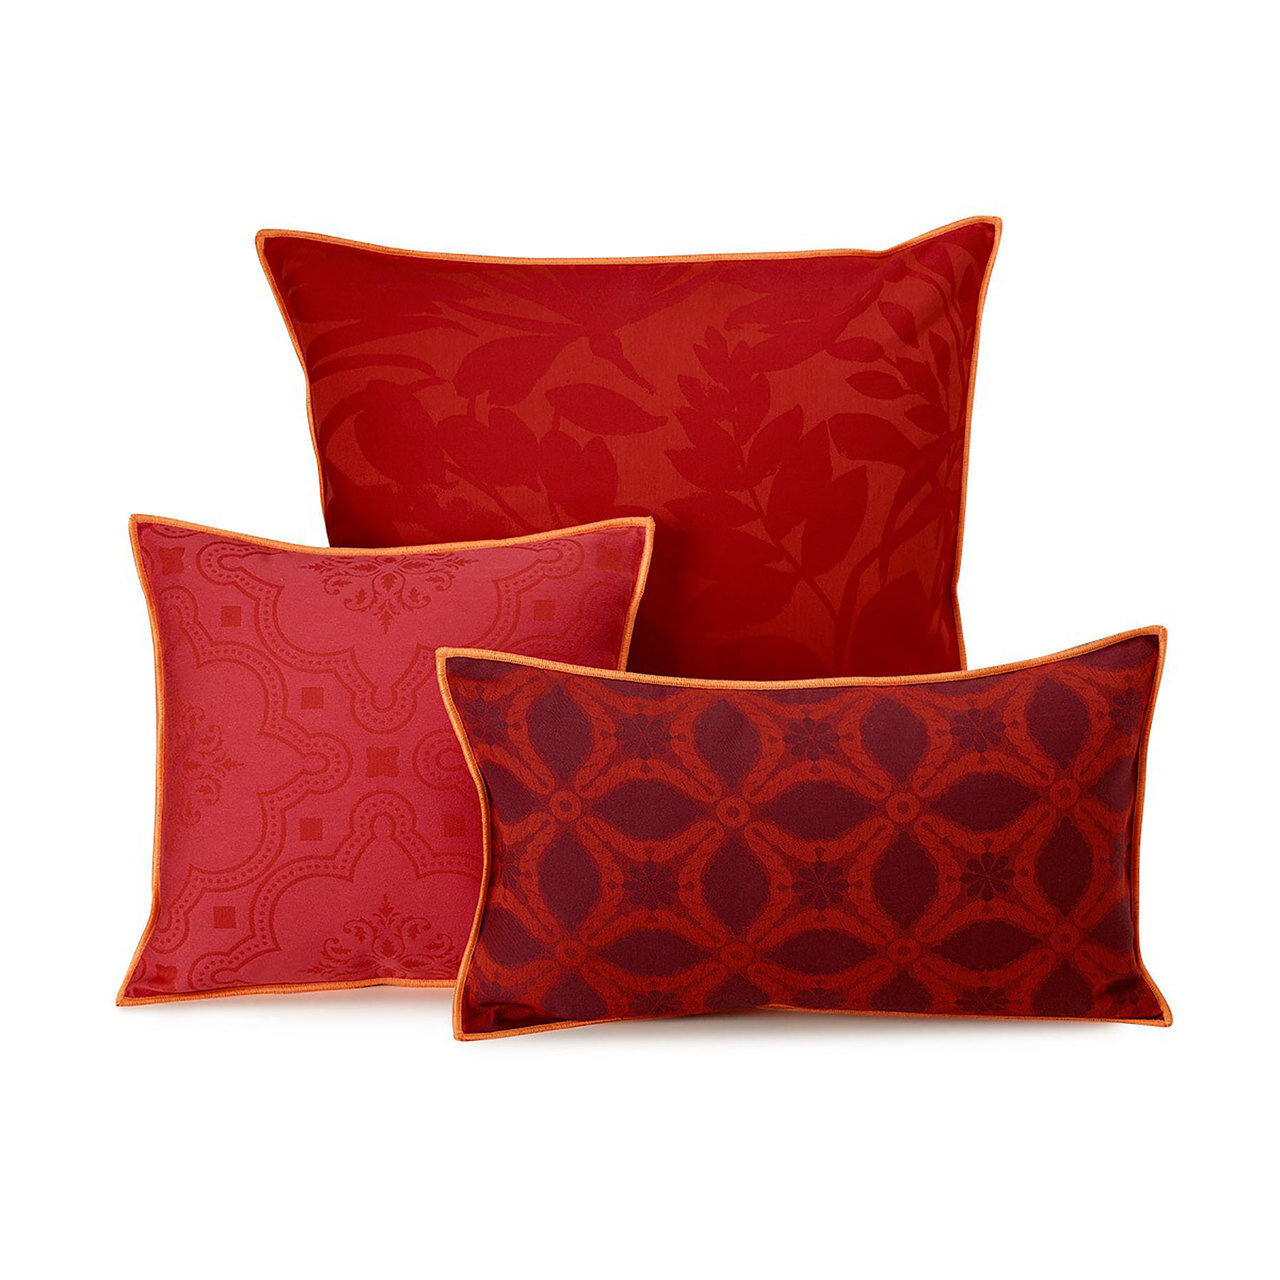 Le Jacquard Bahia Red Cushion Cover 12x20